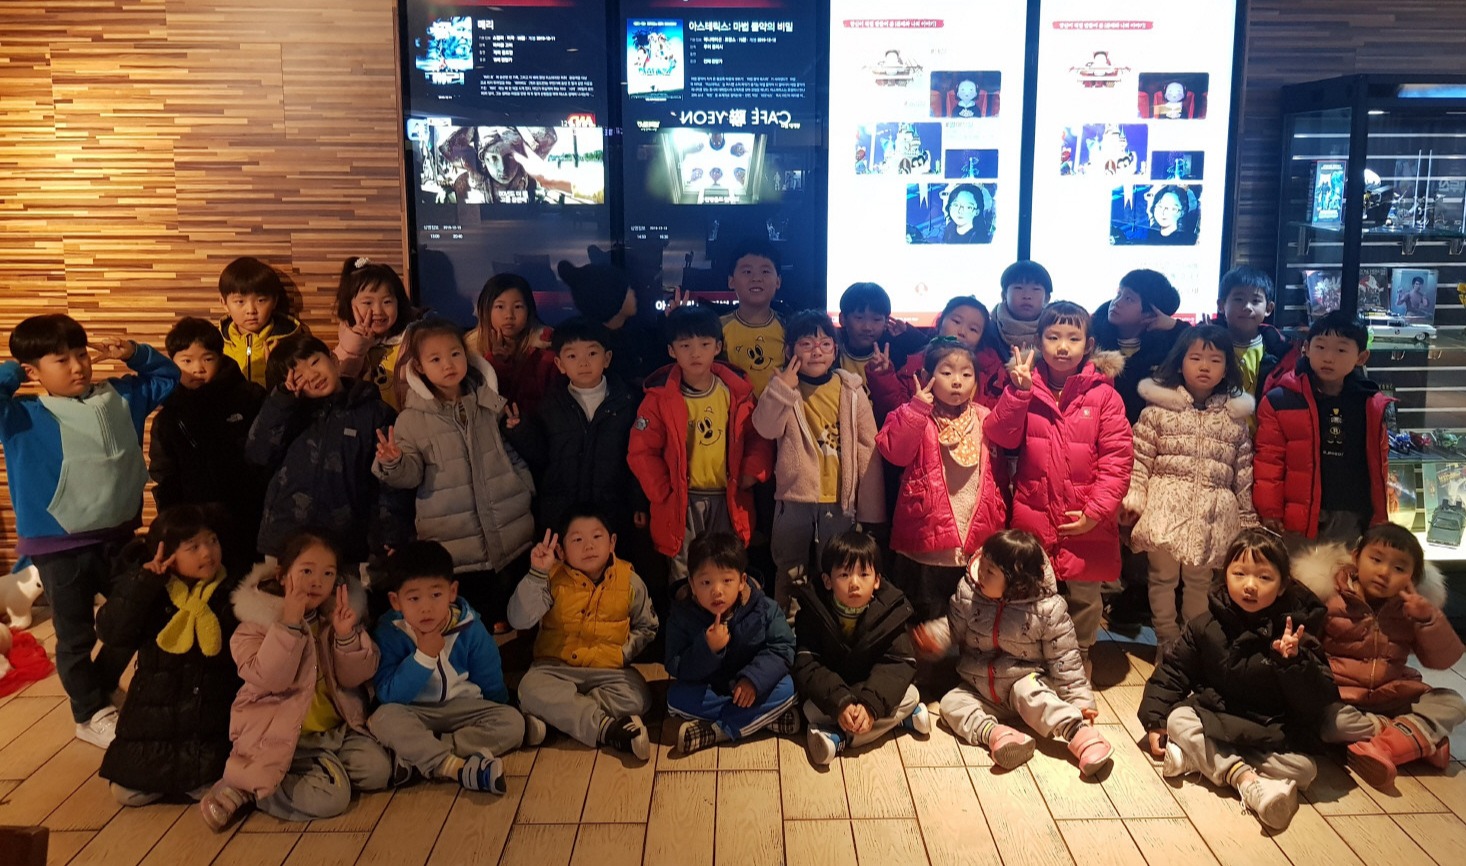 군위초등학교 병설유치원(원장 우옥연) 원아 35명은 지난 13일 대구 롯데시네마에서 ‘겨울왕국 2’ 영화관람을 했다.